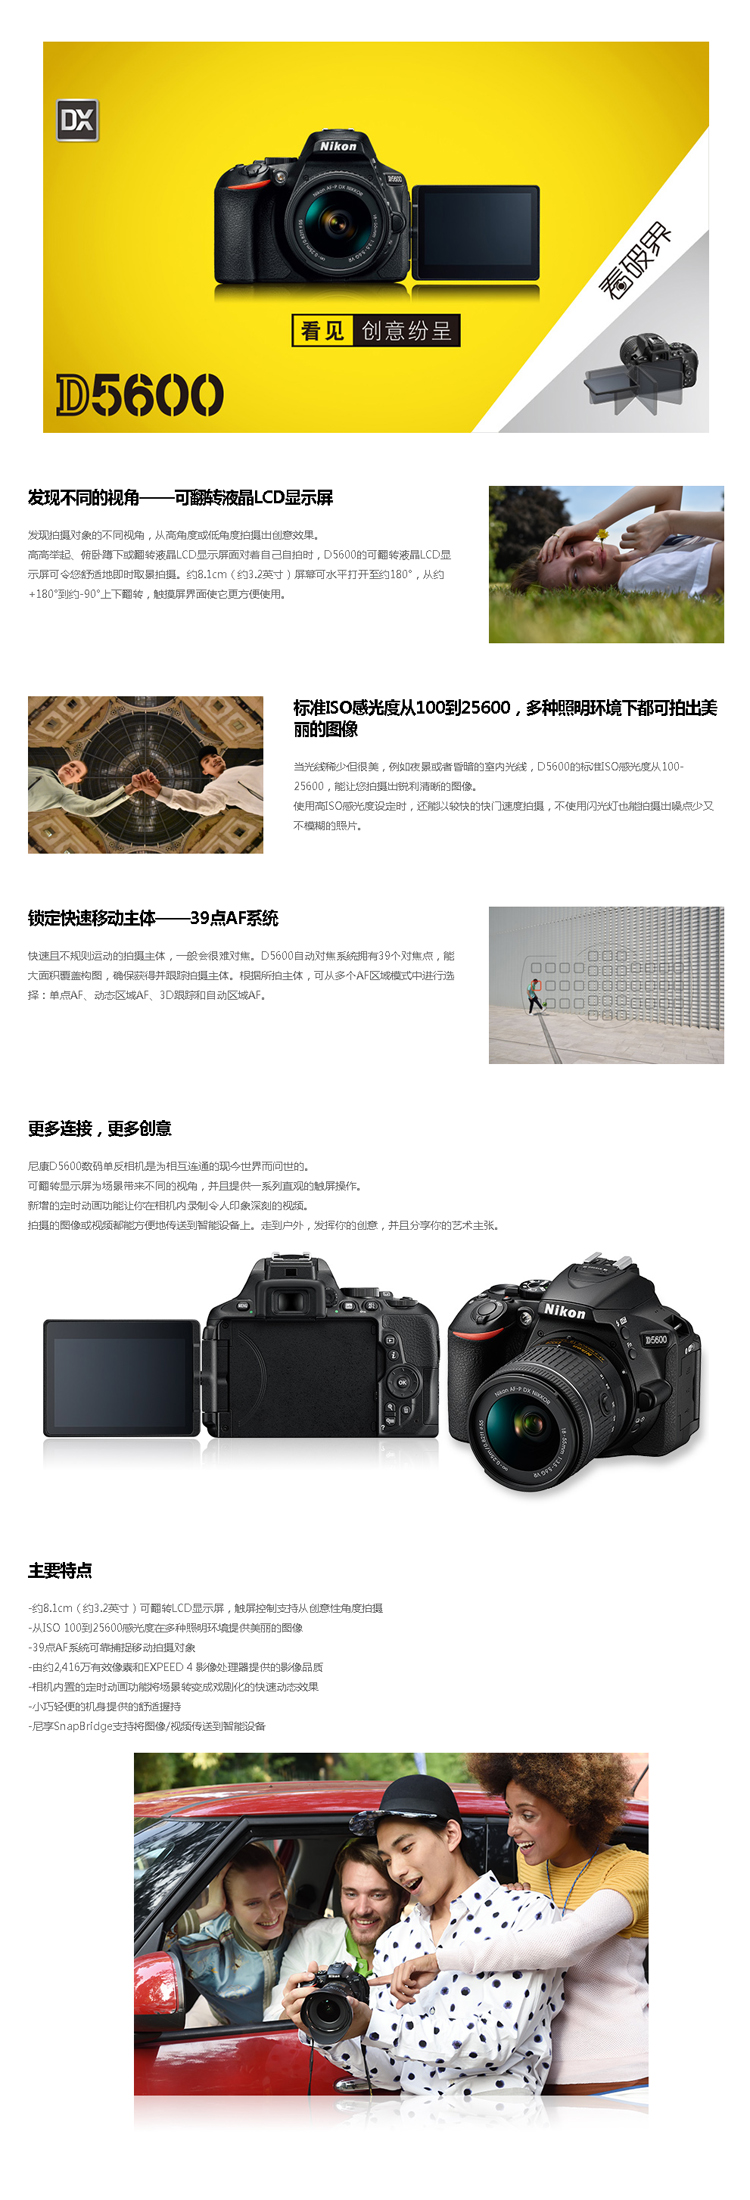 尼康(Nikon)数码单反相机 D5600 (AFP 18-55mm VR +50mm F1.8D )双镜头套机